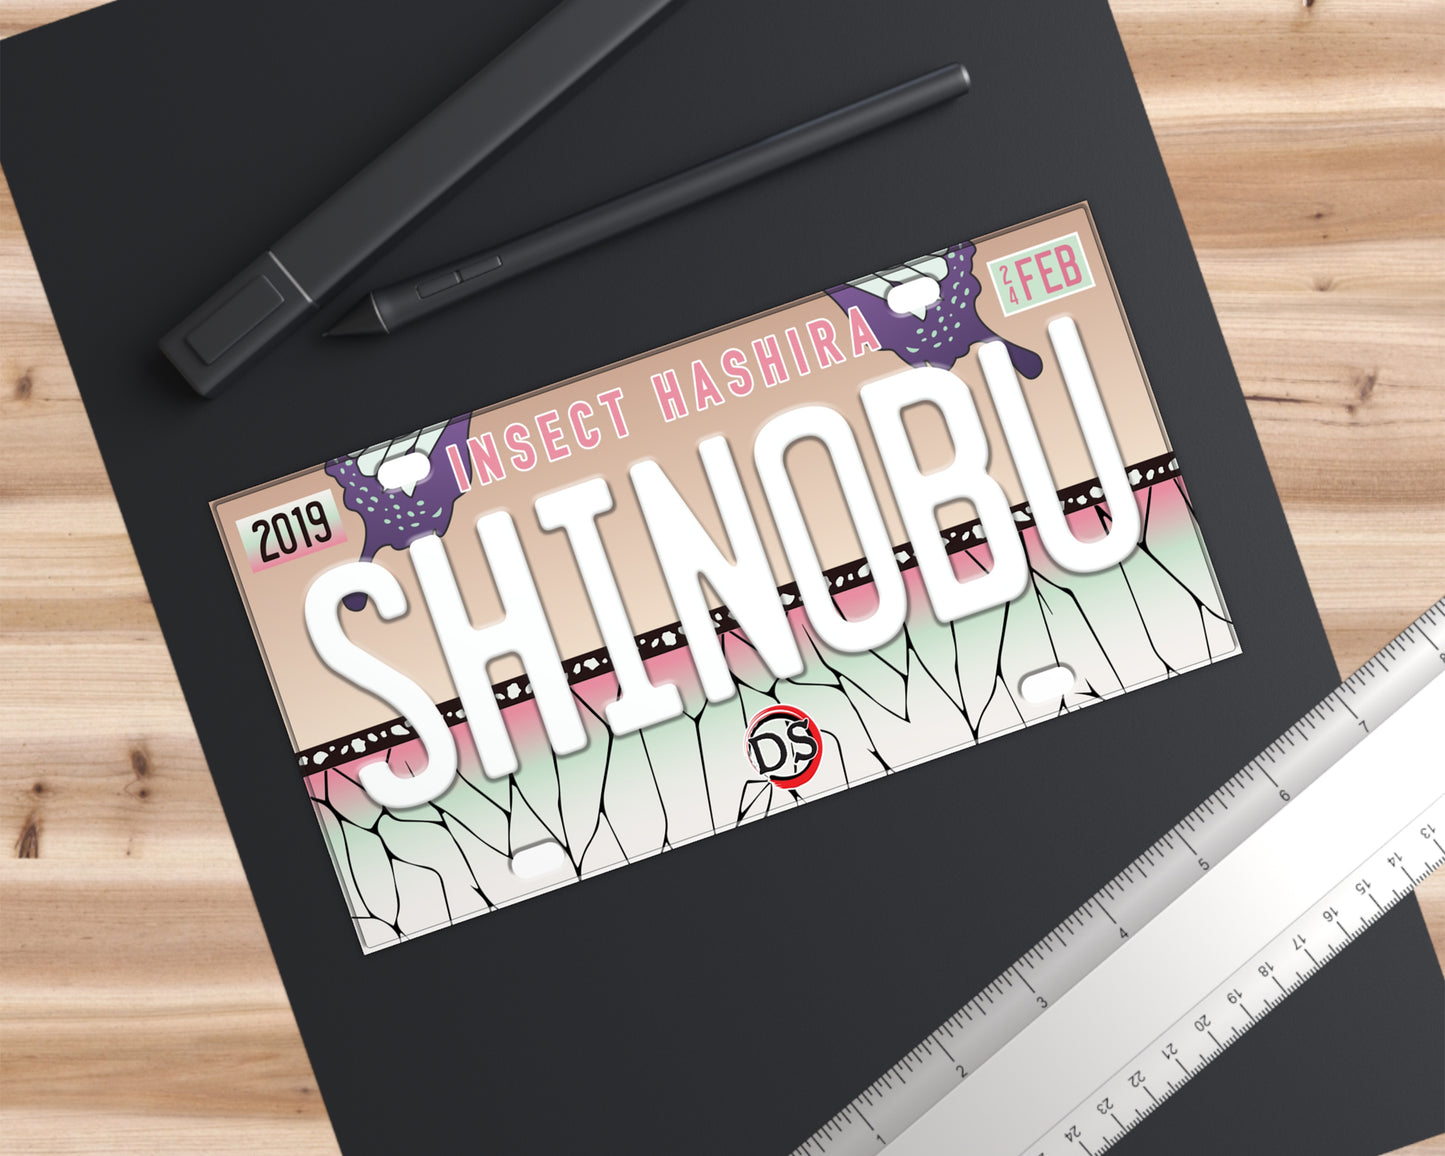 Shinobu bumper sticker